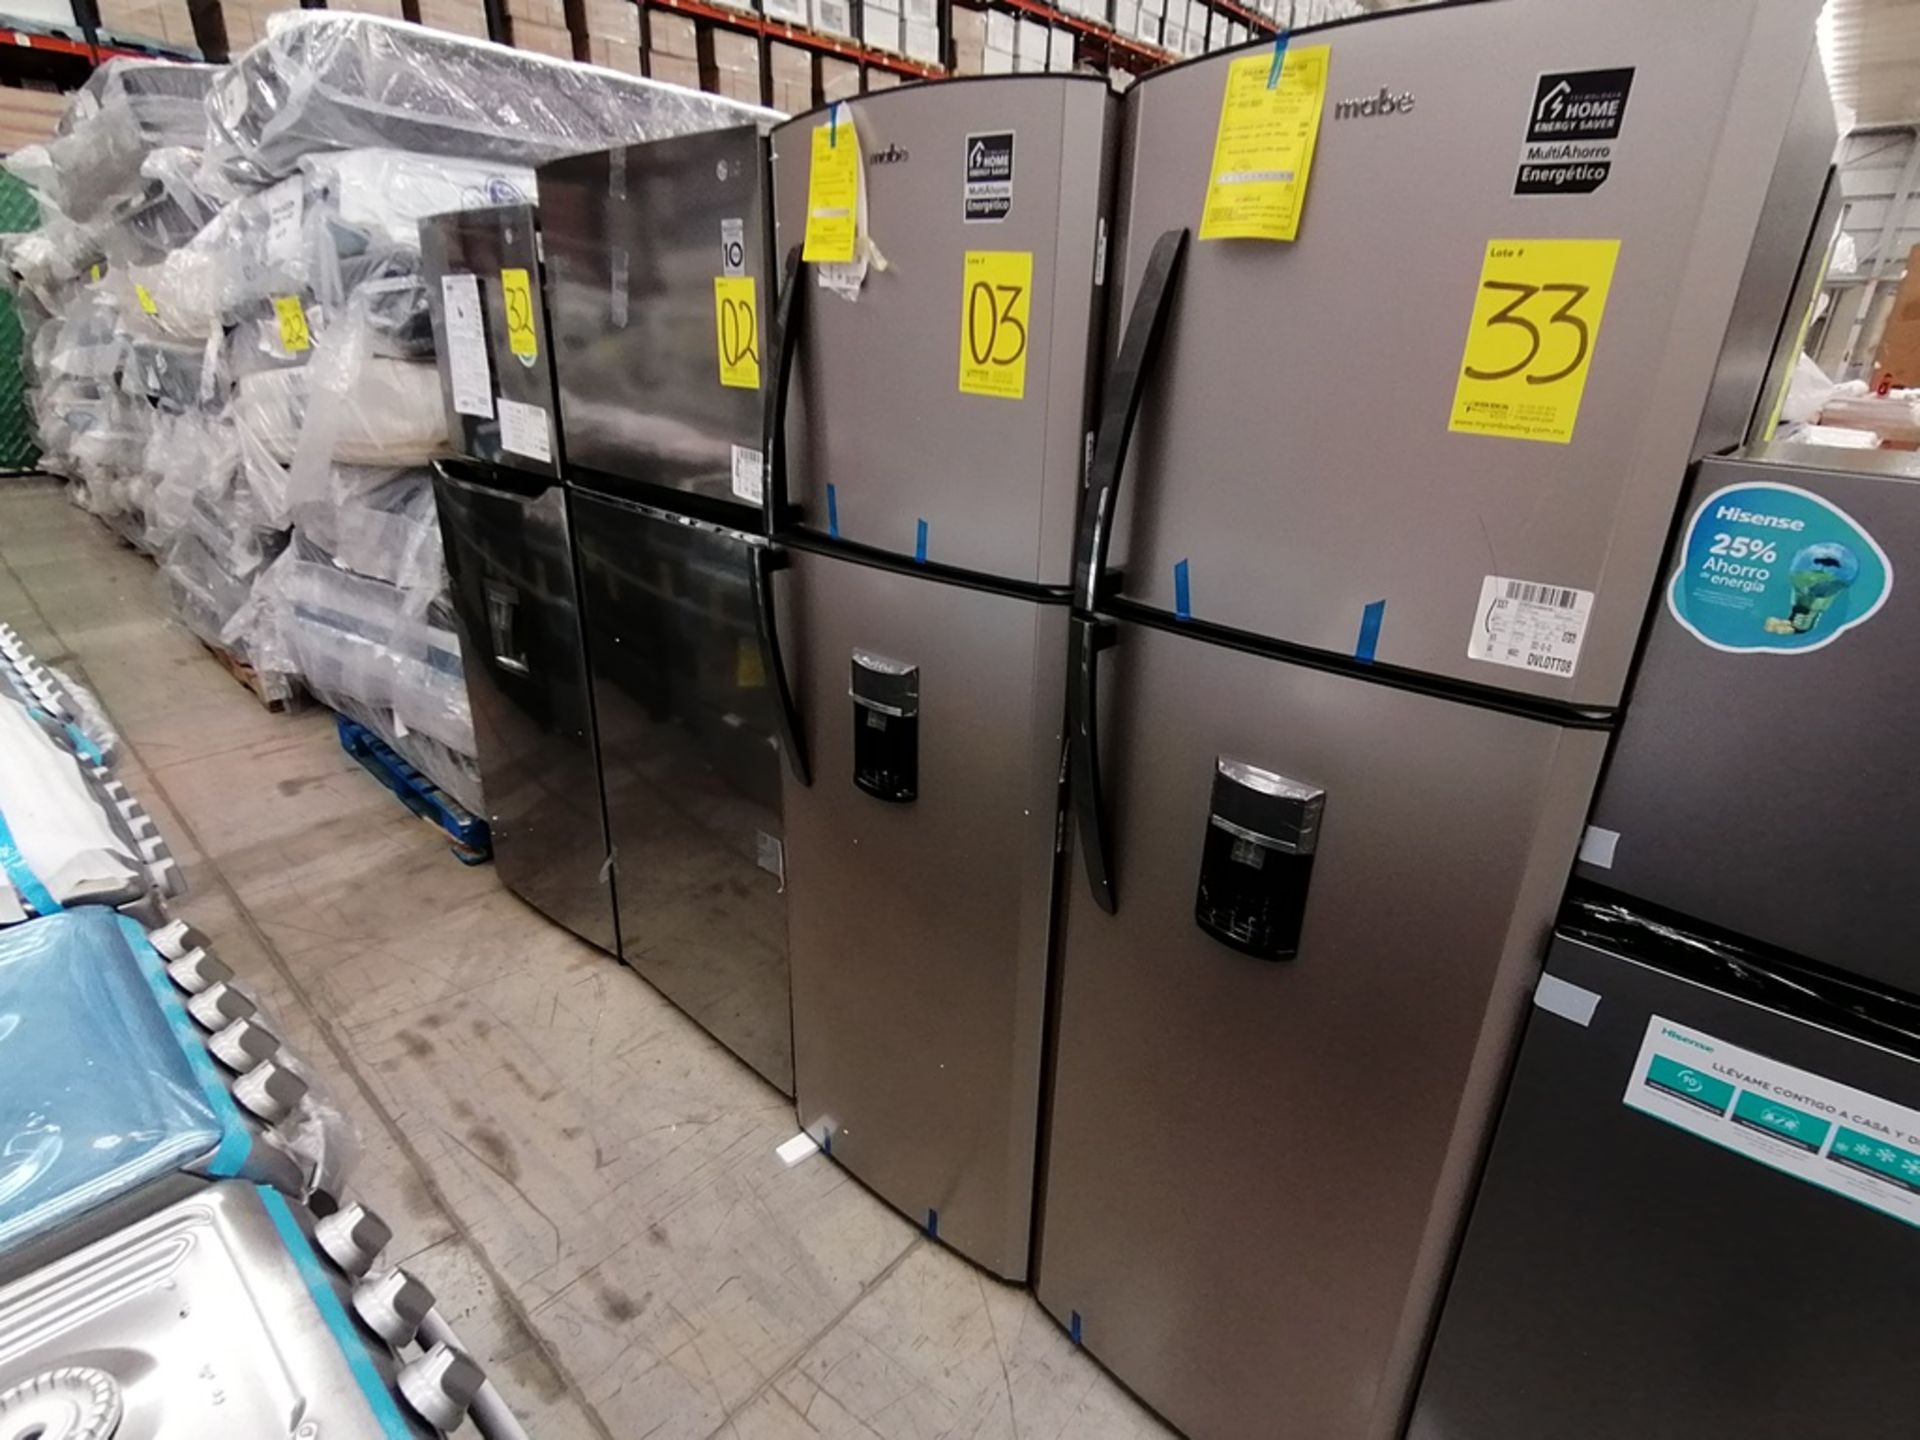 1 Refrigerador con Dispensador de Agua Marca Mabe, Color Gris, Modelo RMA300FJMR, Serie 2112B707142 - Image 2 of 13